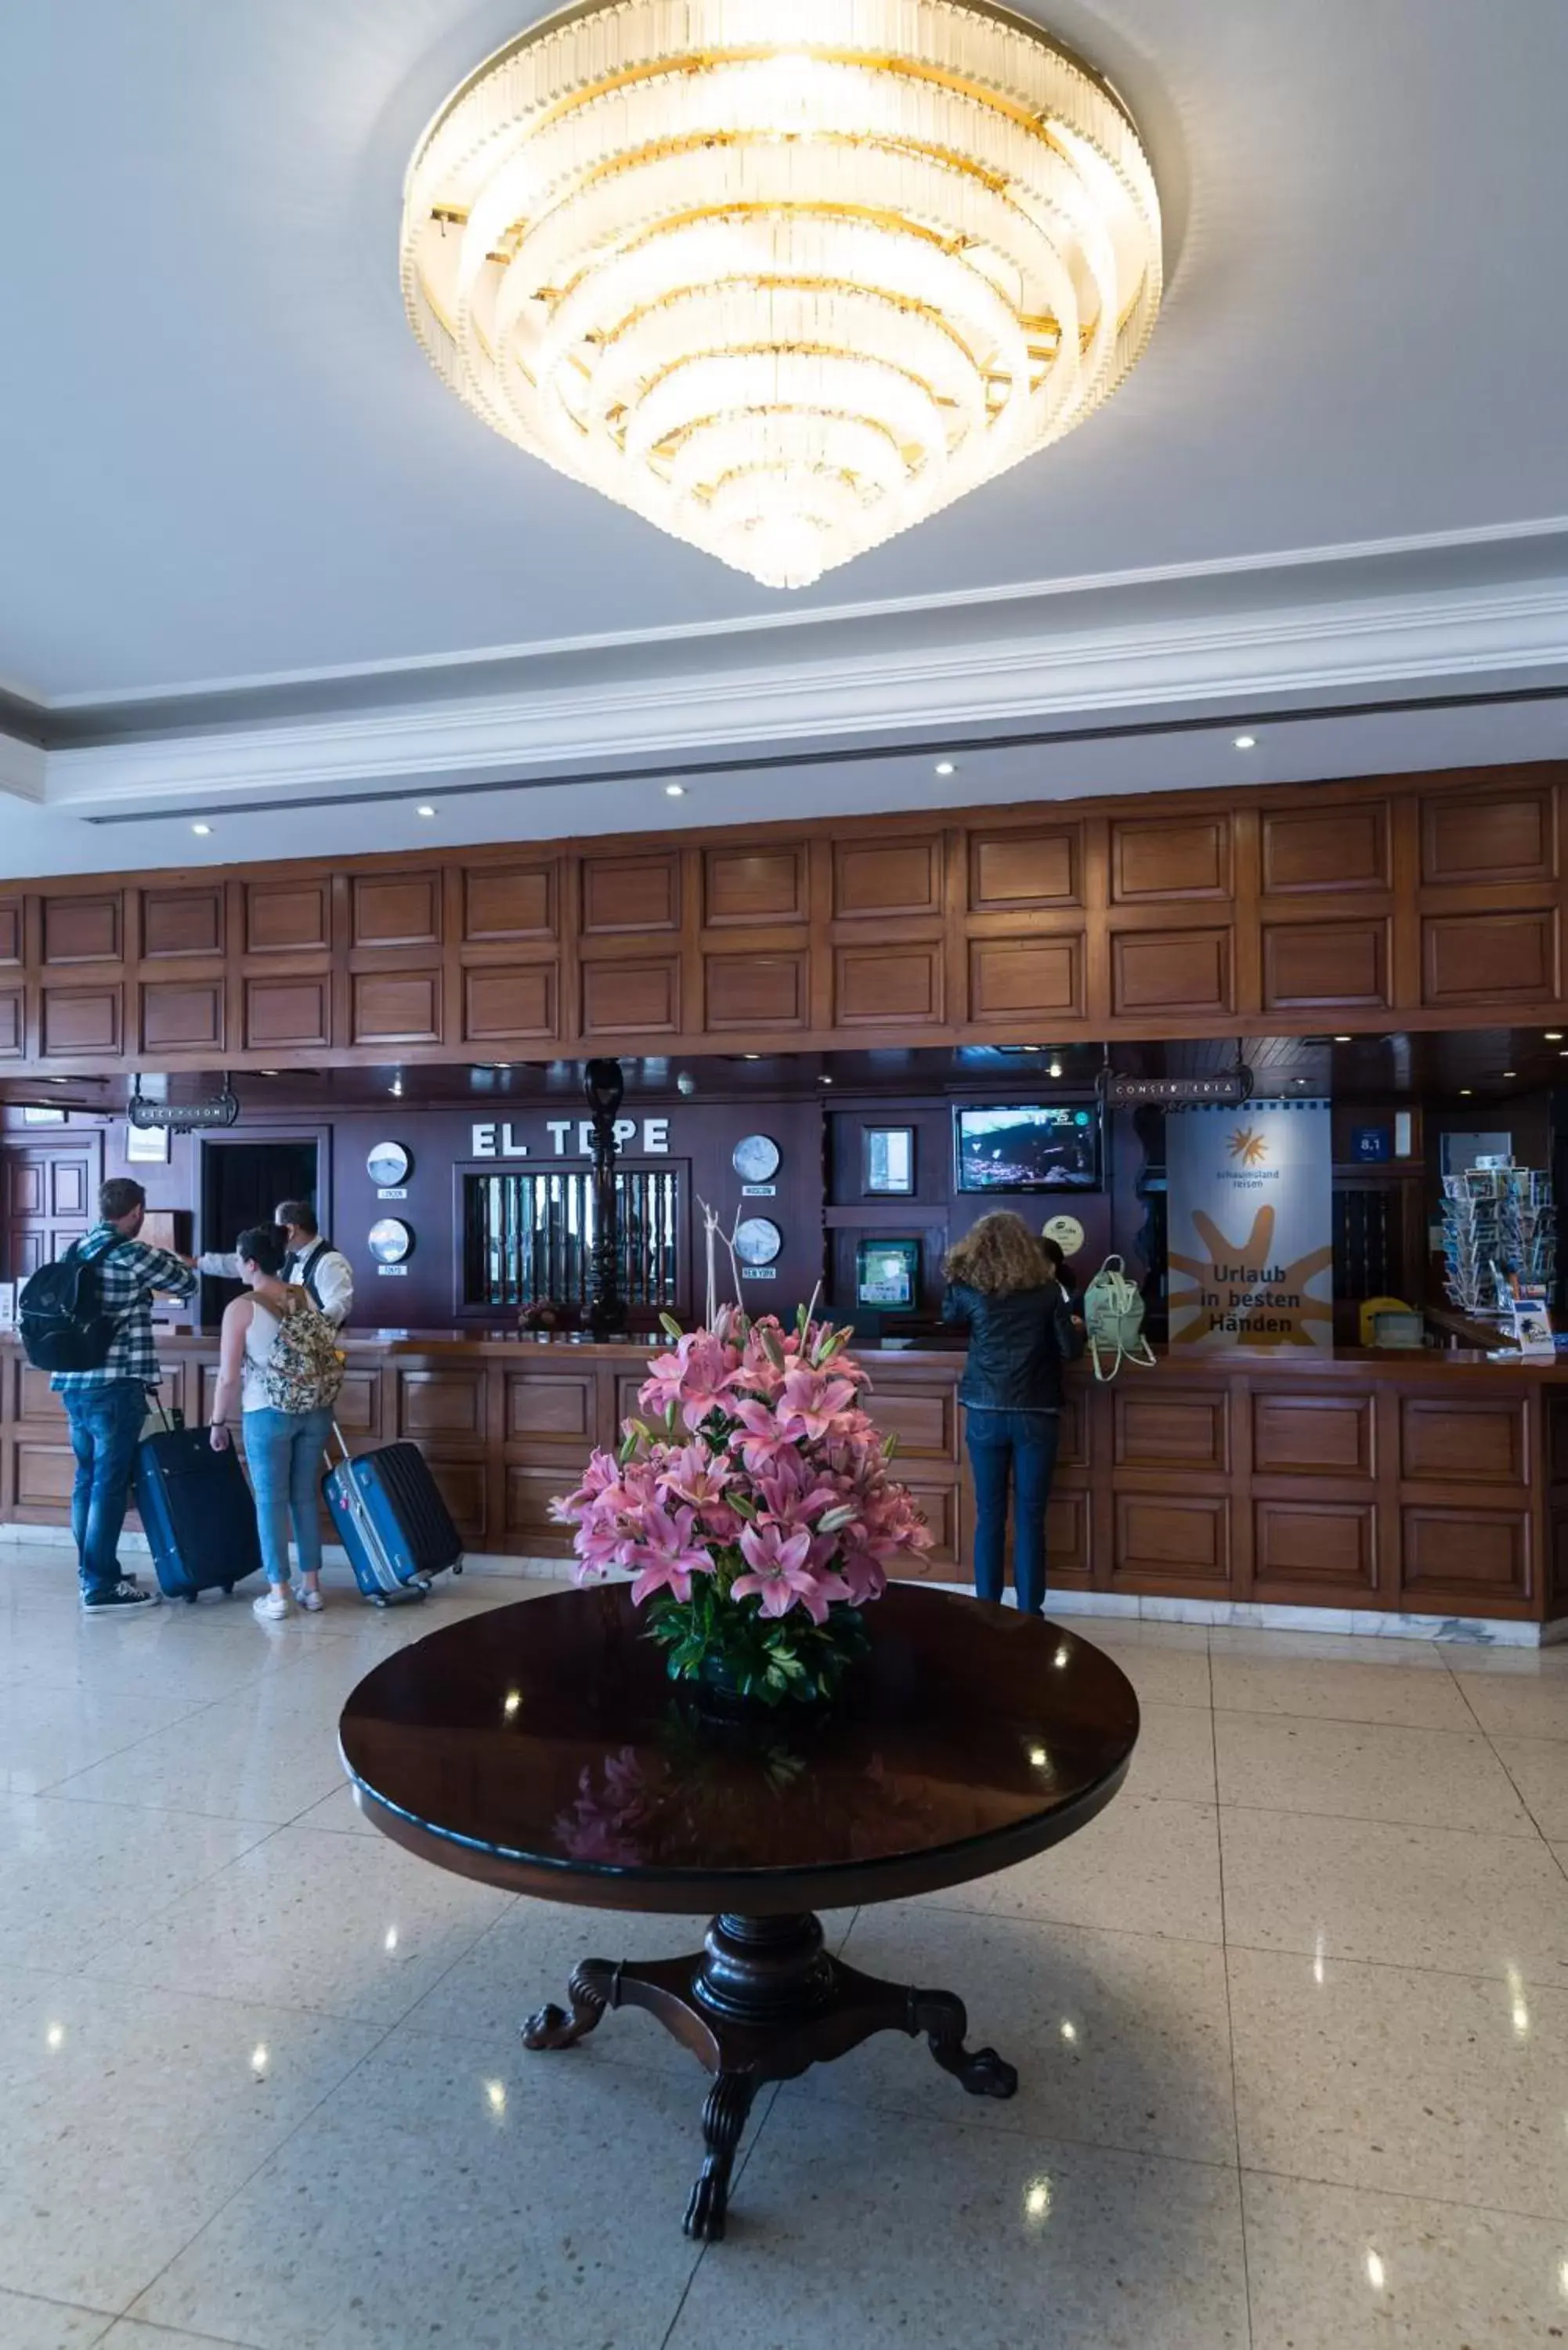 Lobby or reception in Hotel Atlantic El Tope